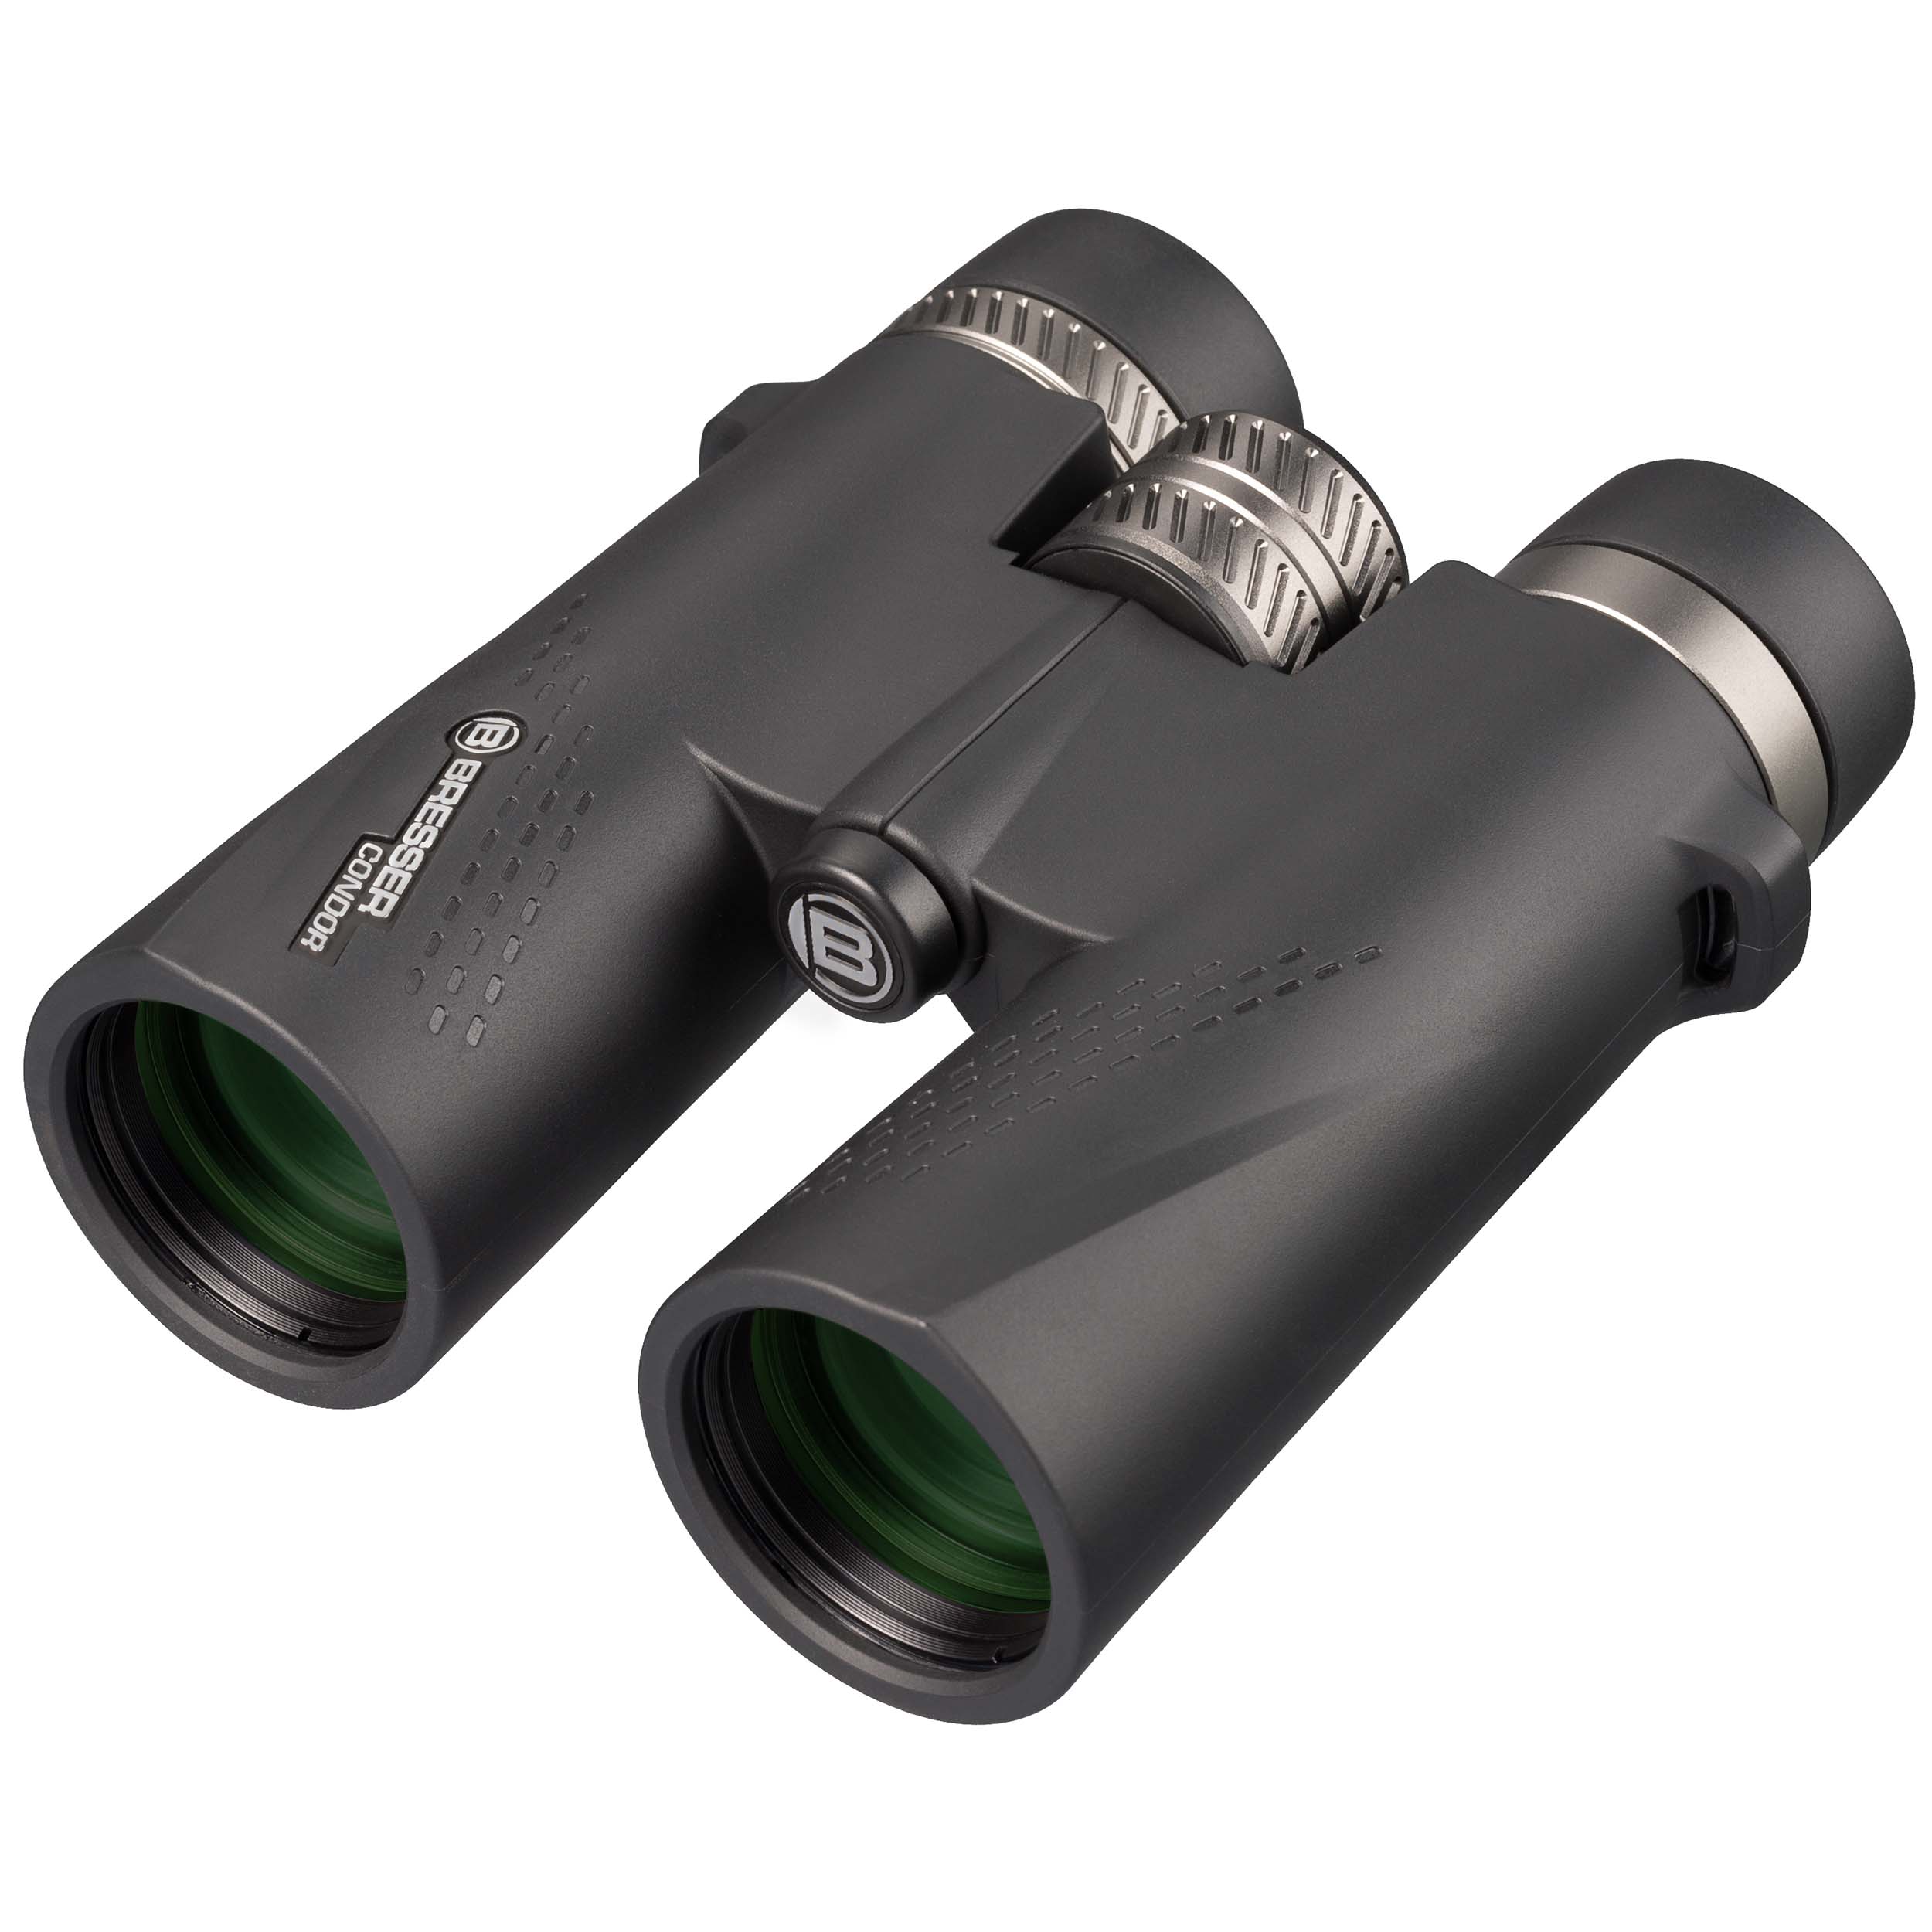 BRESSER Condor 8x42 Binoculars with UR Coating